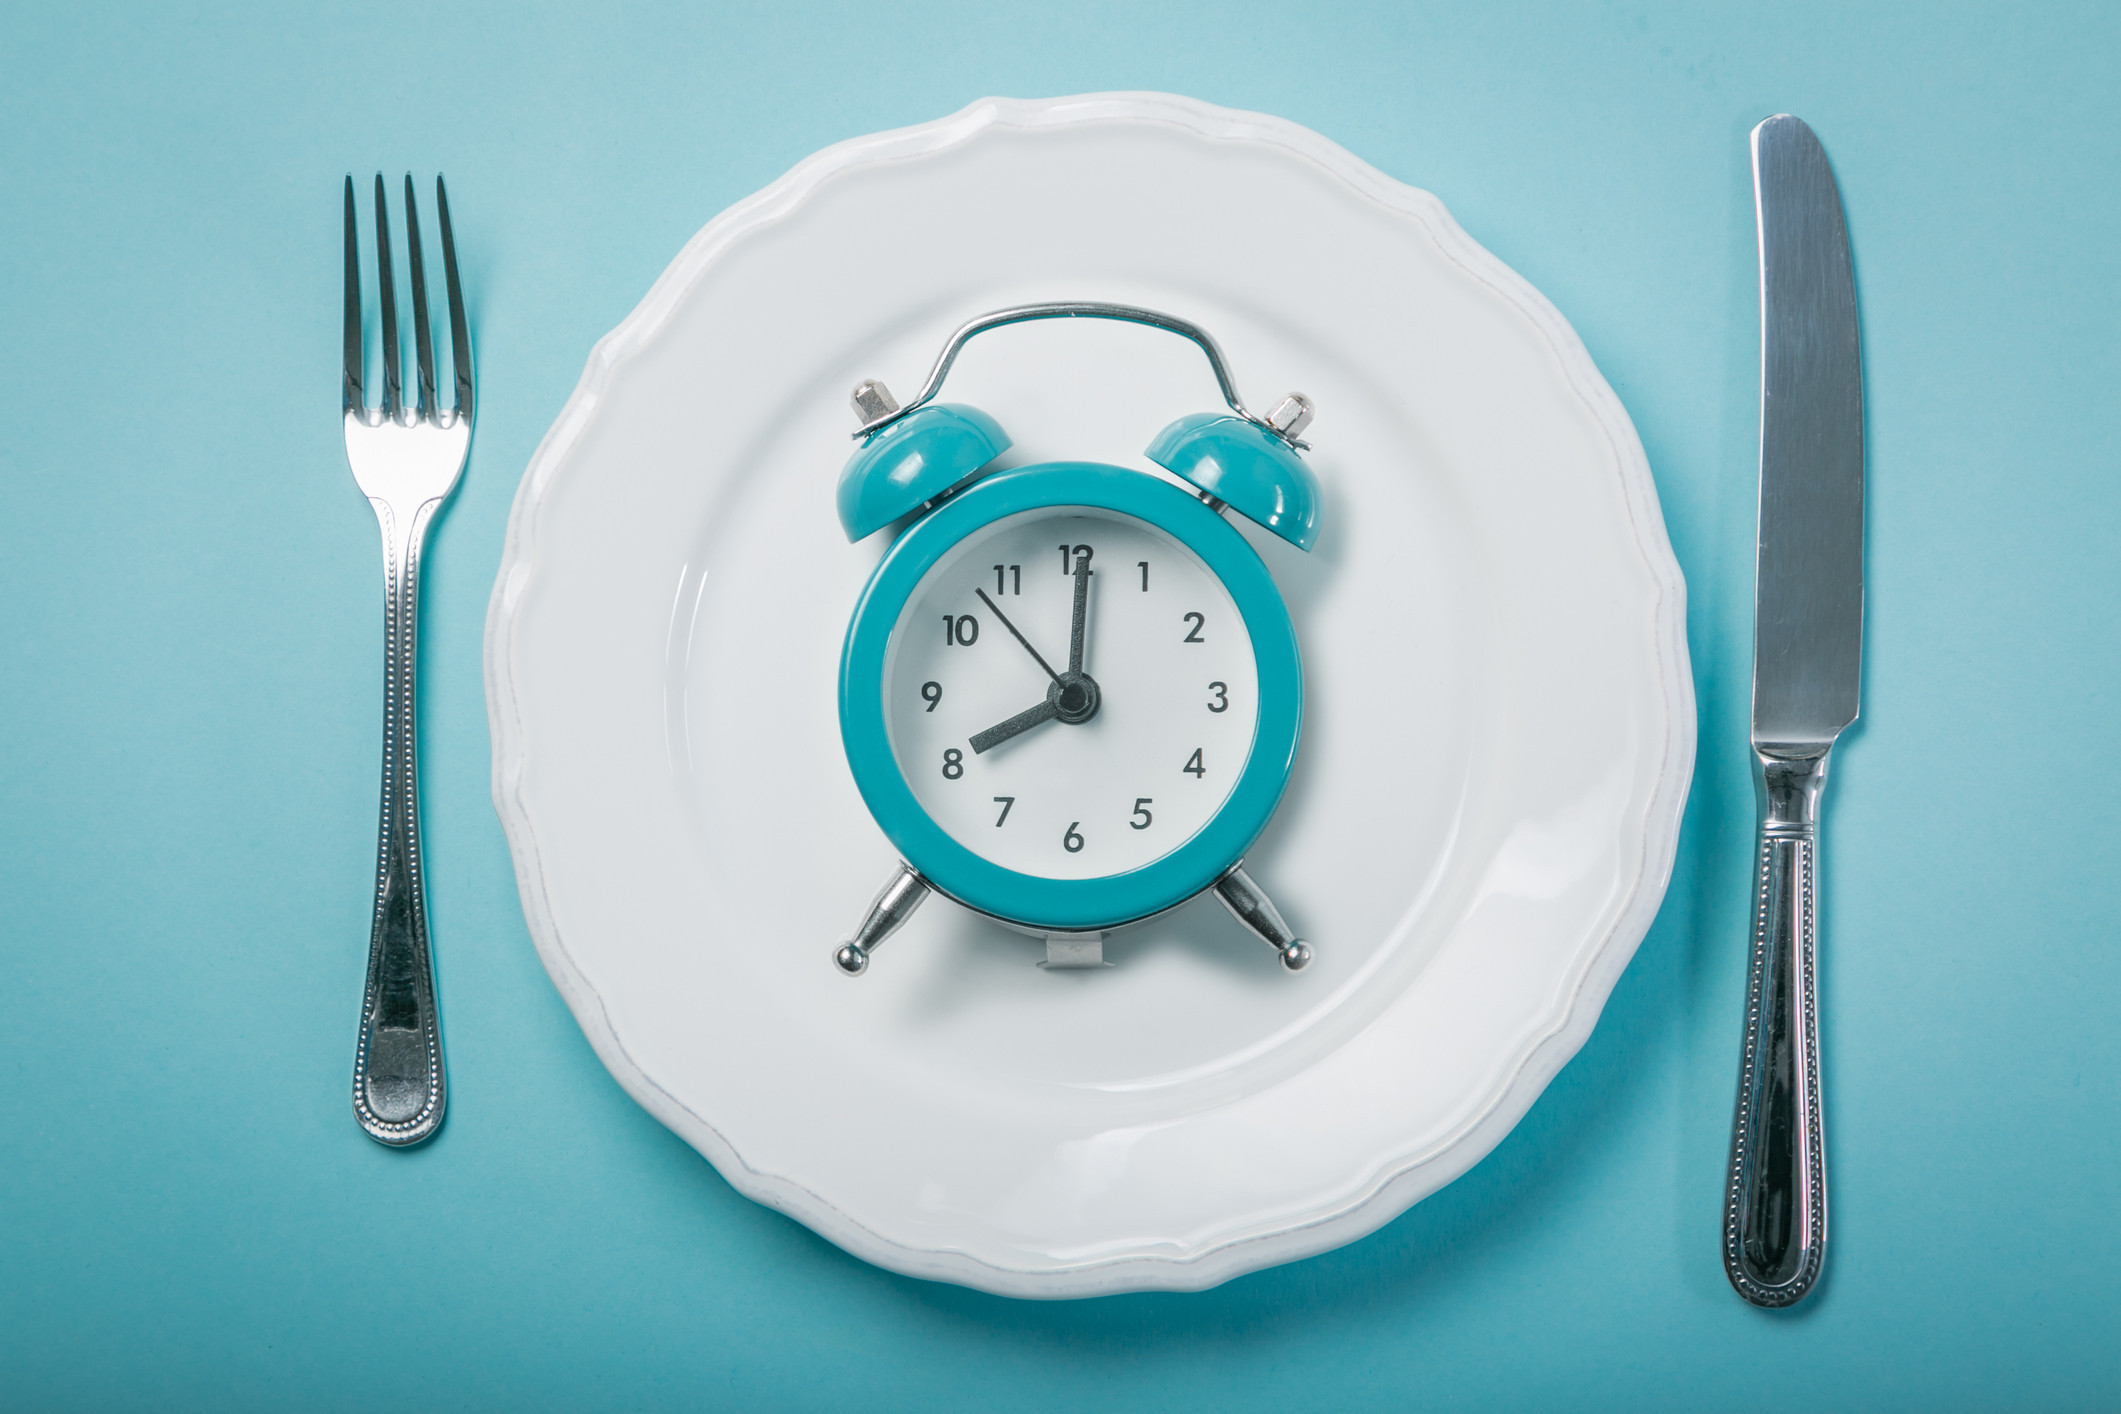 The Science and Benefits of Fasting | उपवास का करायचा असतो? त्याने वजन कसे कमी होते? उपवासाचे विज्ञान आणि फायदे जाणून घ्या 